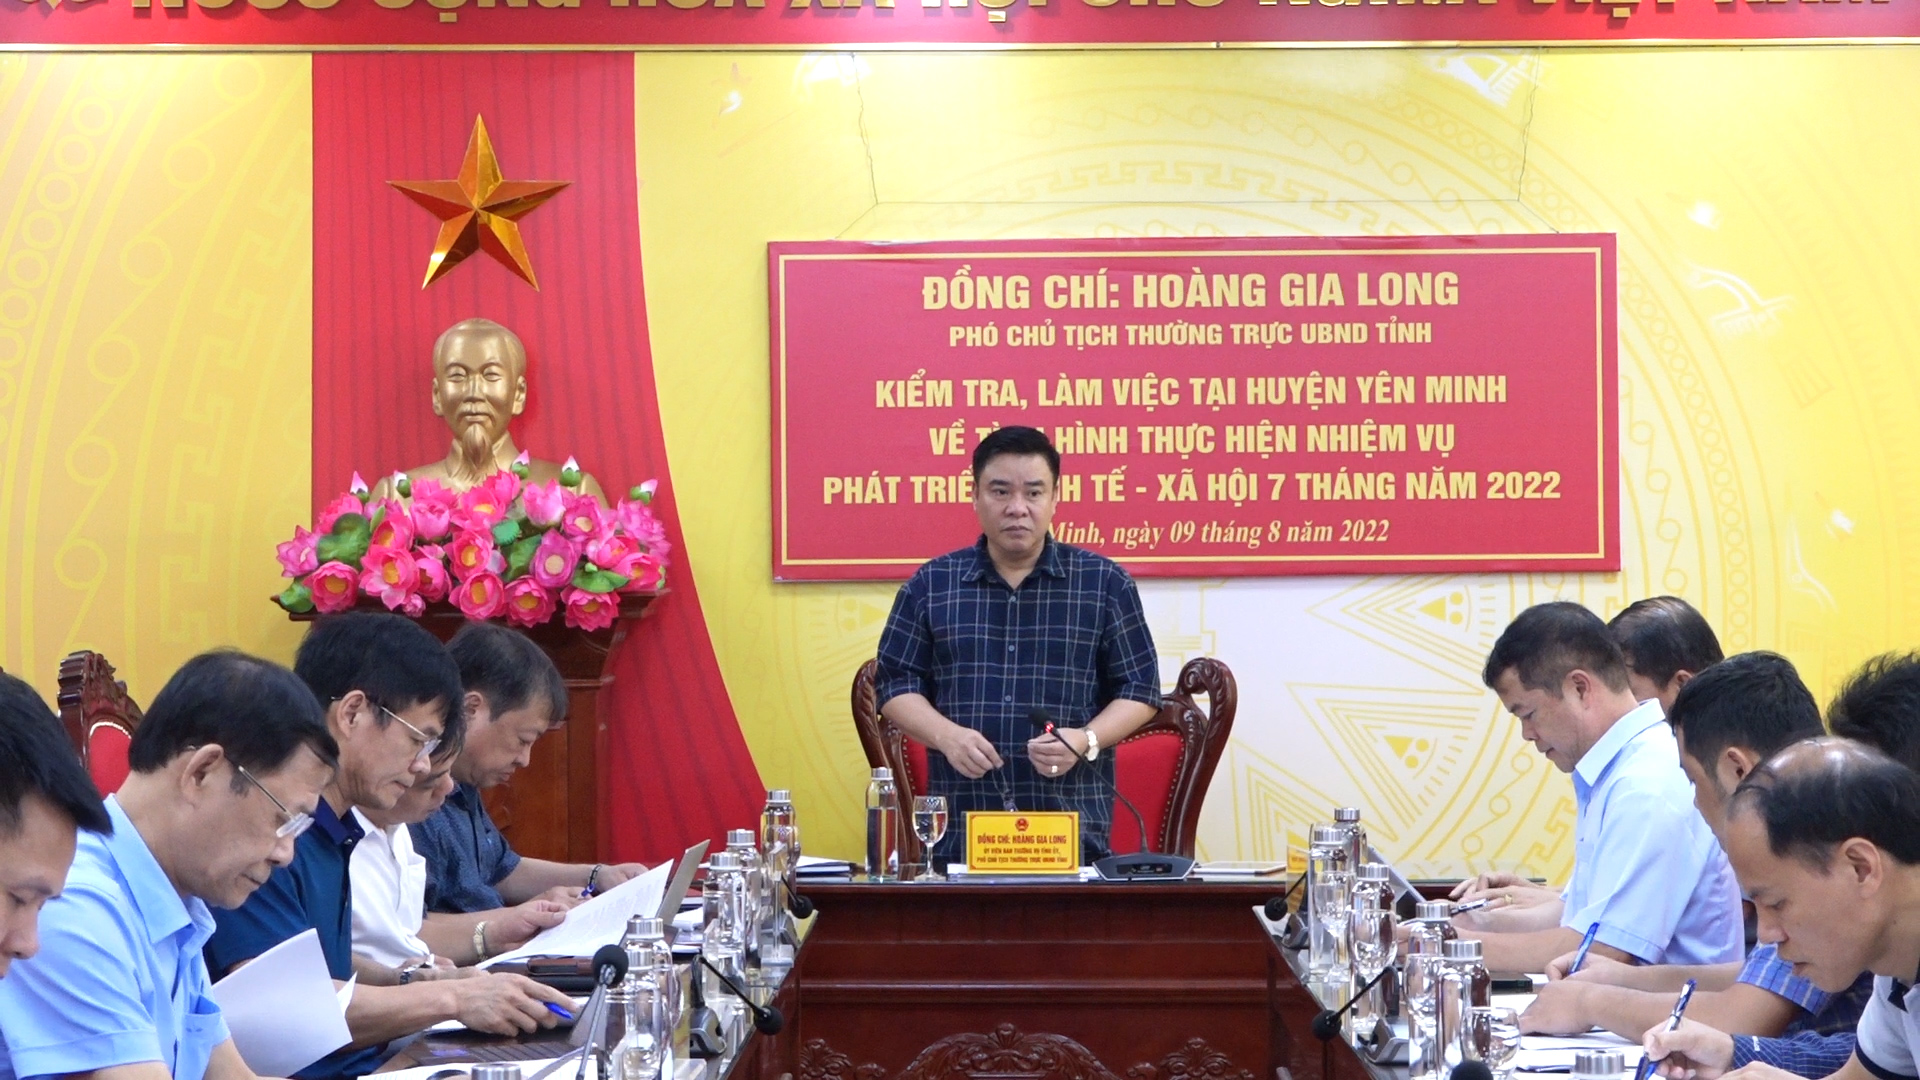 Phó chủ tịch Thường trực UBND tỉnh làm việc tại huyện Yên Minh